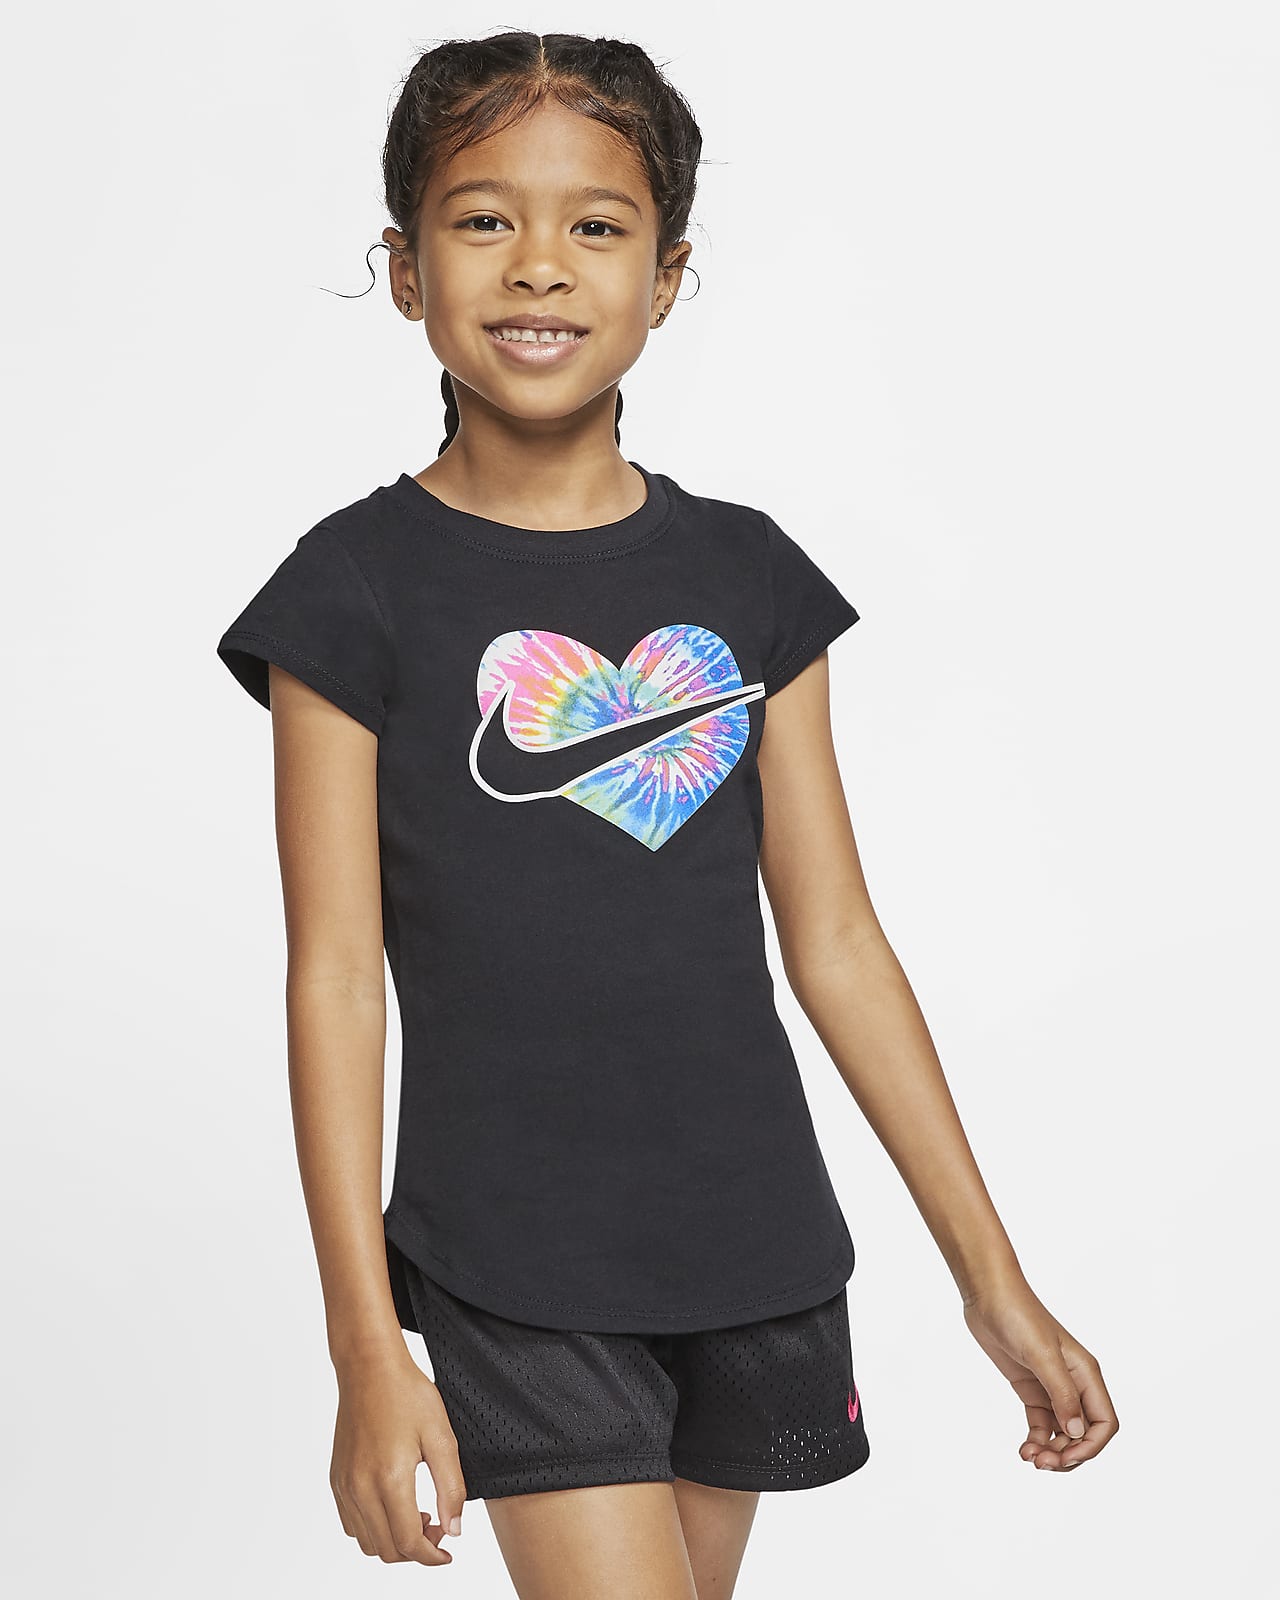 Nike Little Kids' Tie-Dye T-Shirt. Nike.com